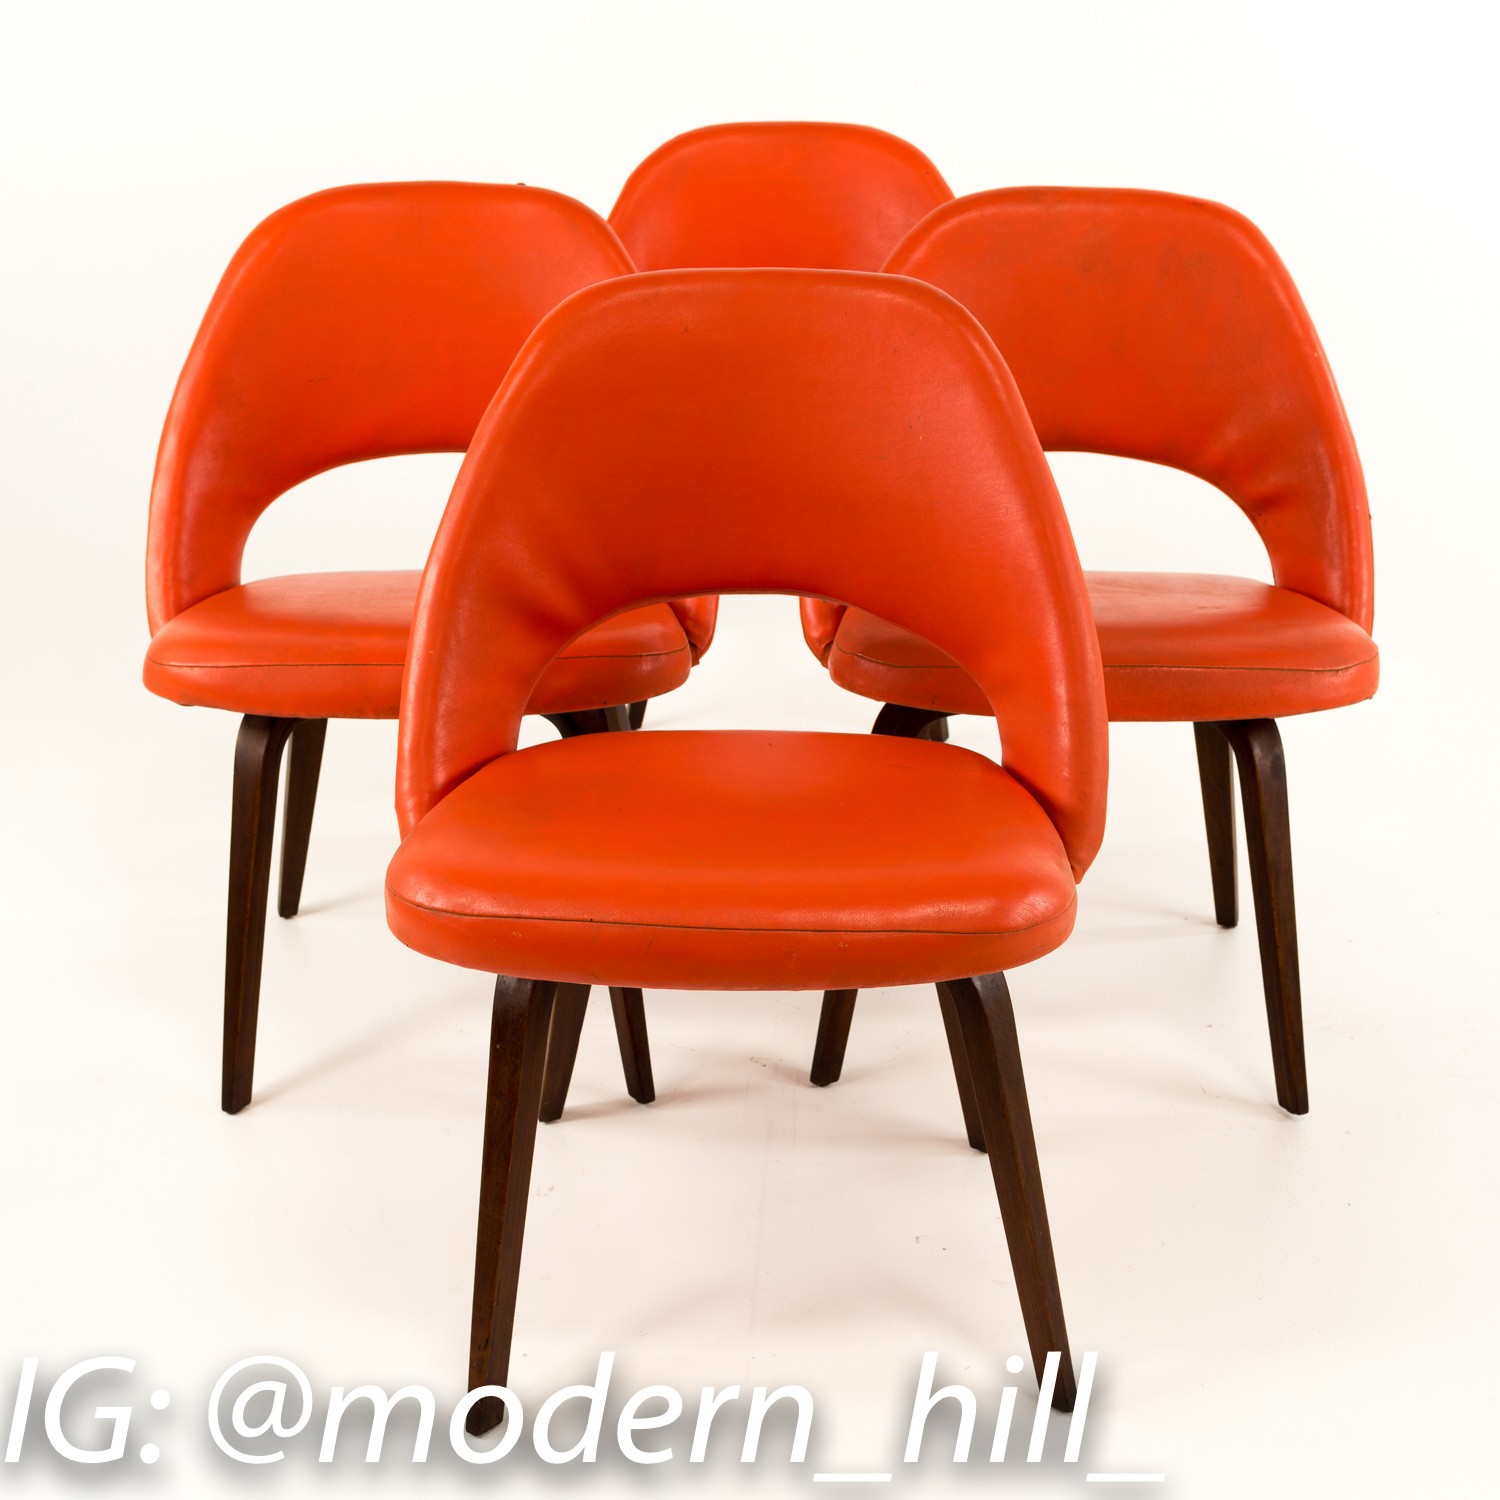 Saarinen Mid-century Modern Executive Chairs - Set of 4